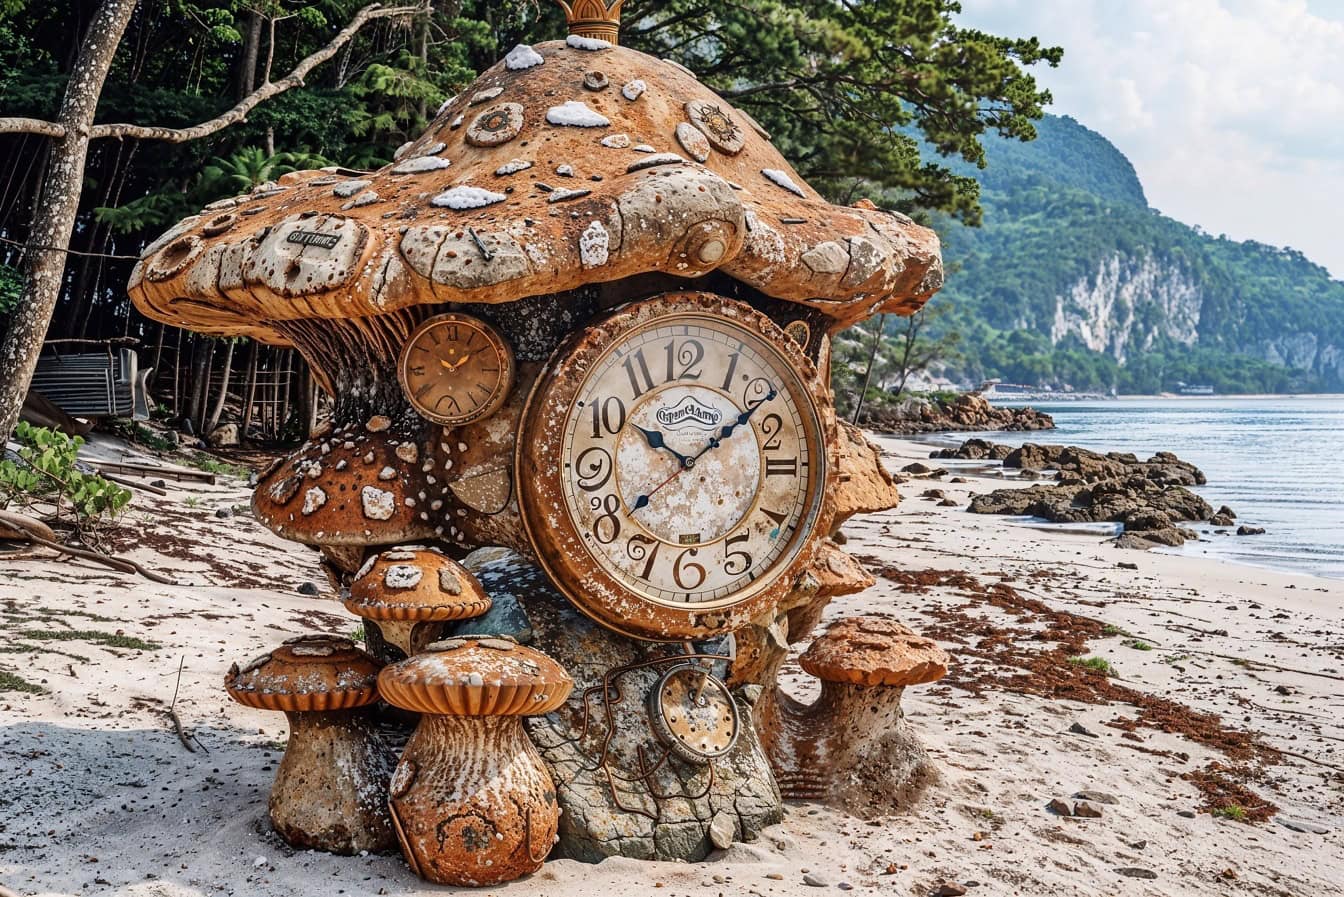 Analoge klok in de vorm van een sprookjesachtige paddestoel op een strand